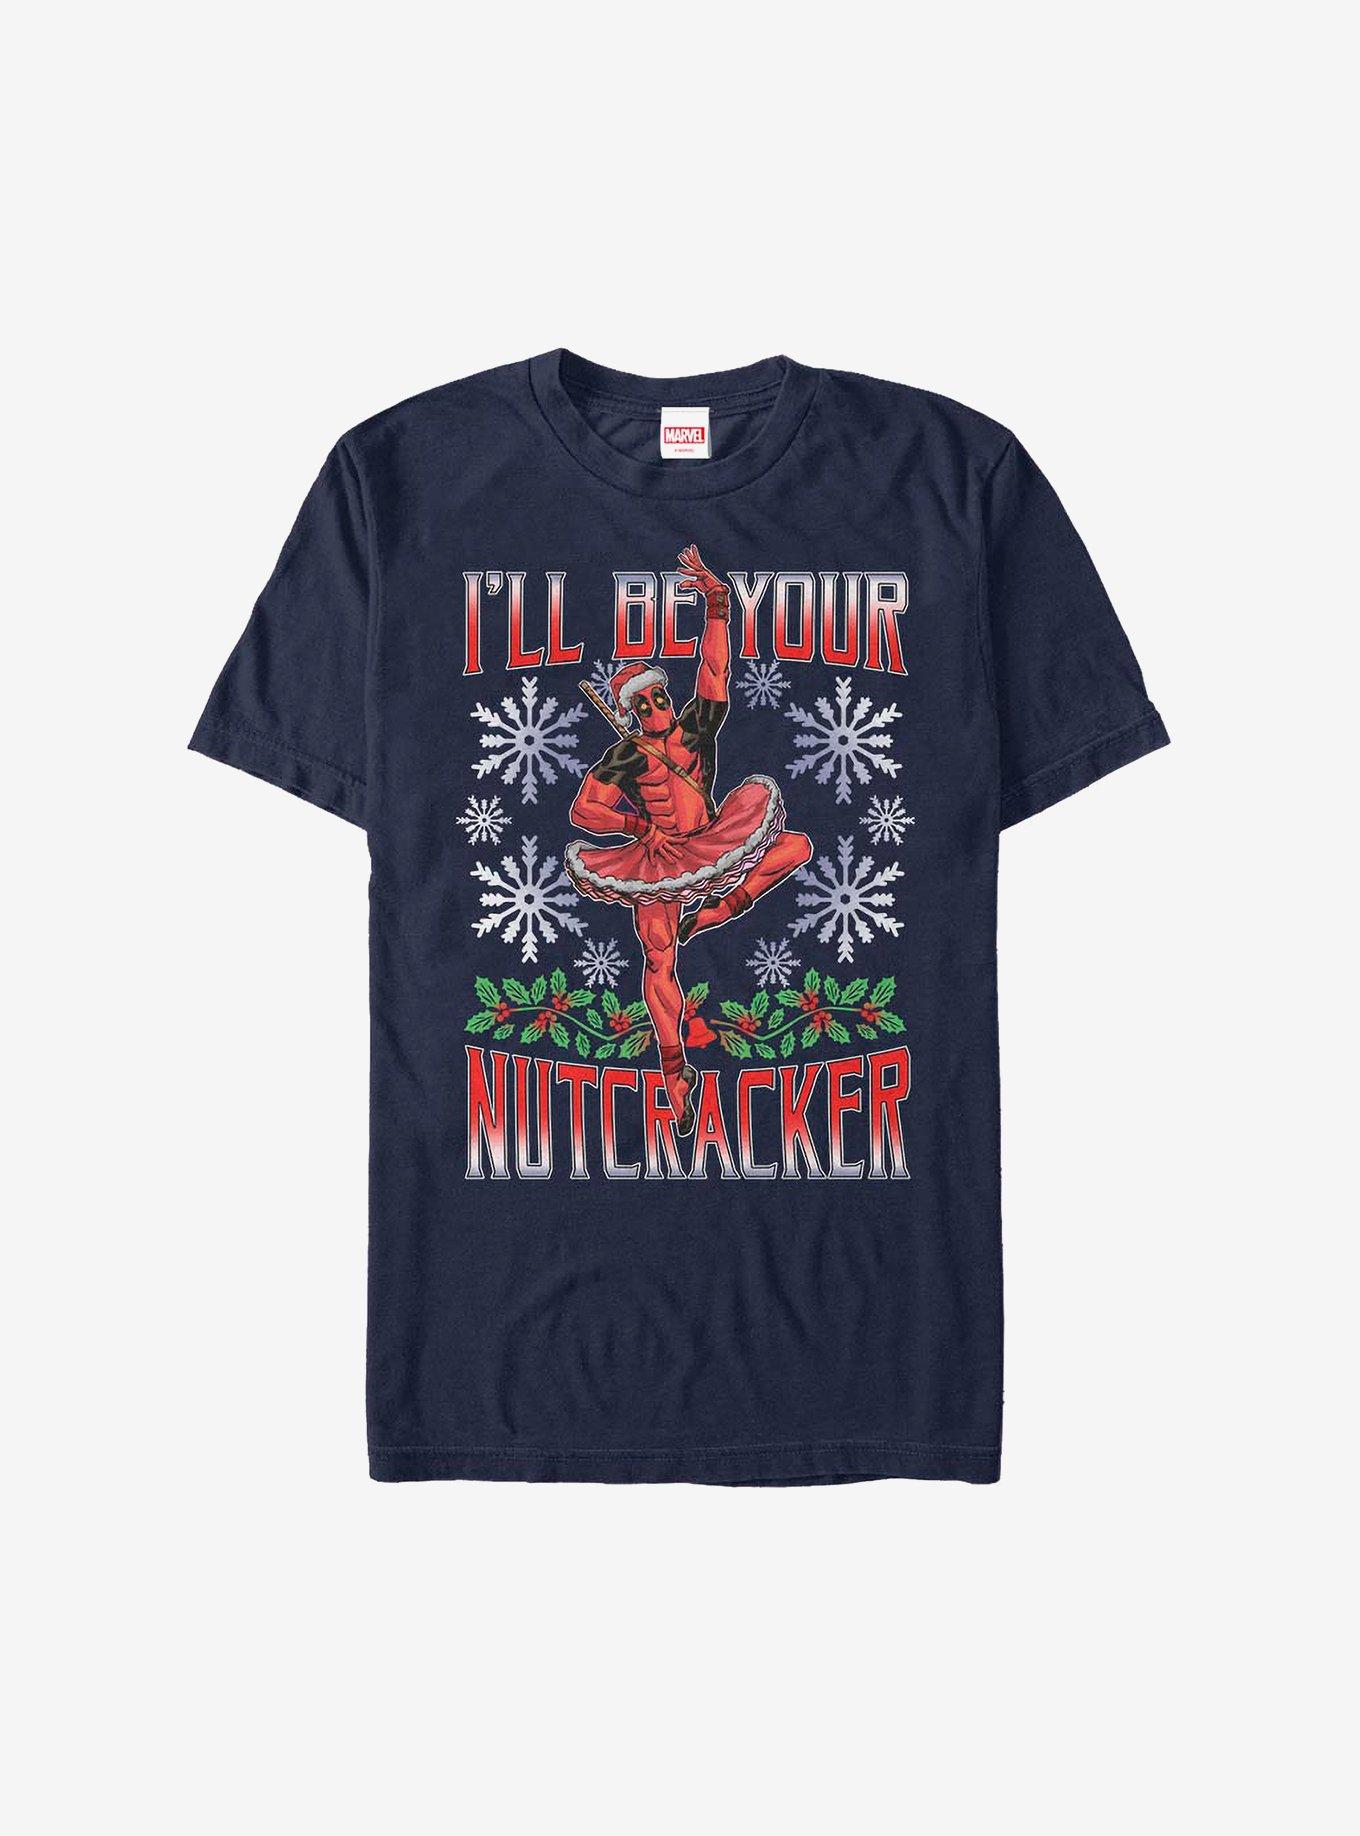 Marvel Deadpool Nutcracker Holiday T-Shirt, NAVY, hi-res